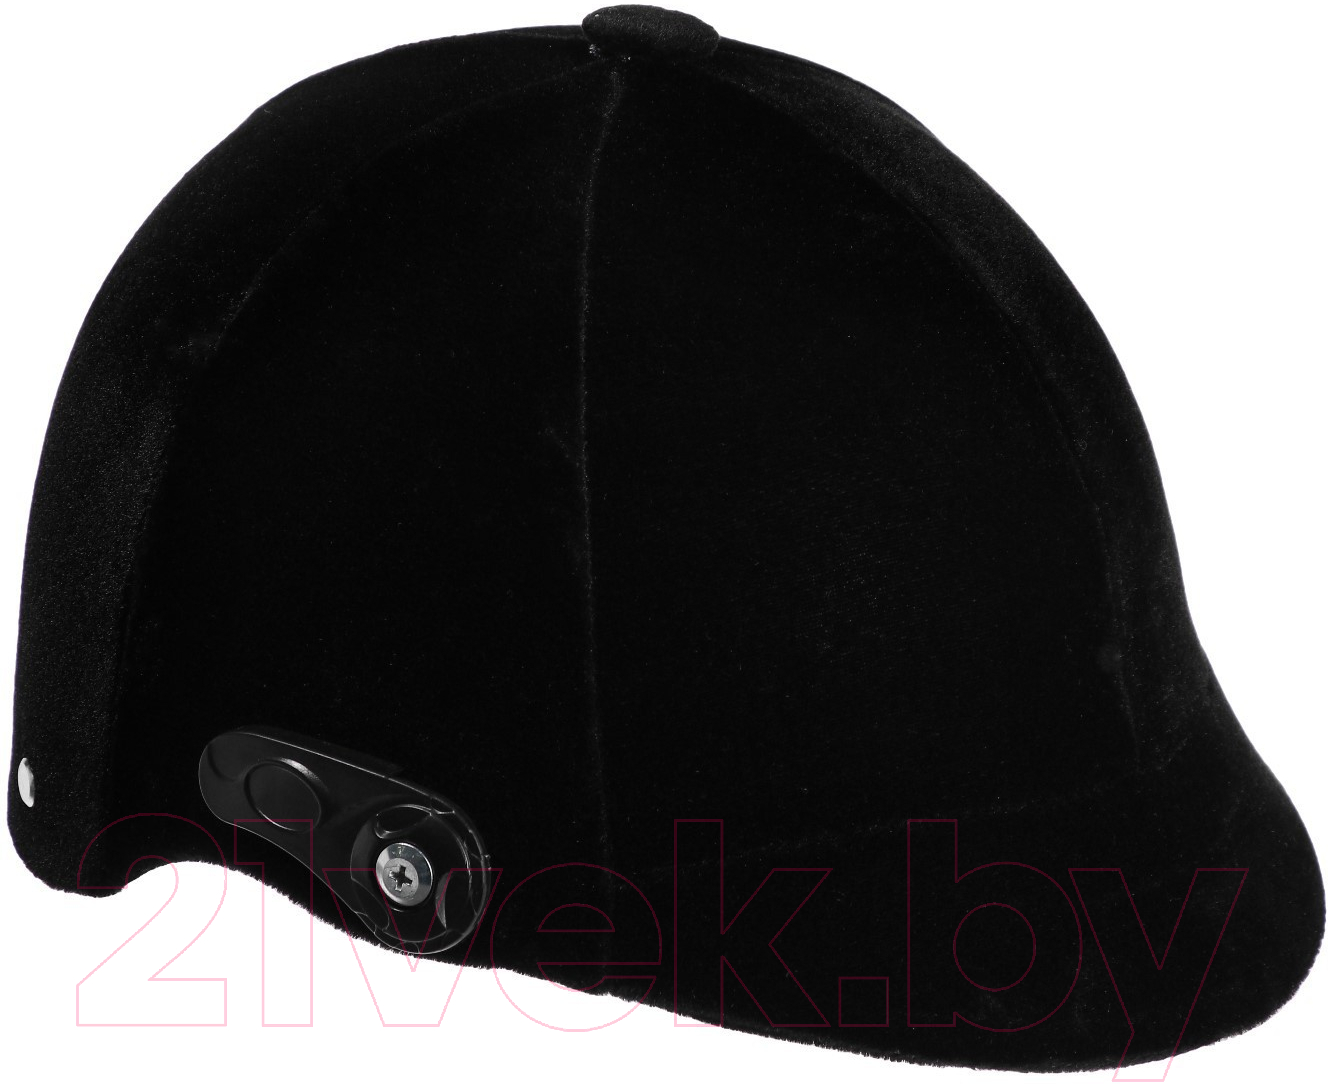 Шлем для верховой езды Sima-Land 7184157